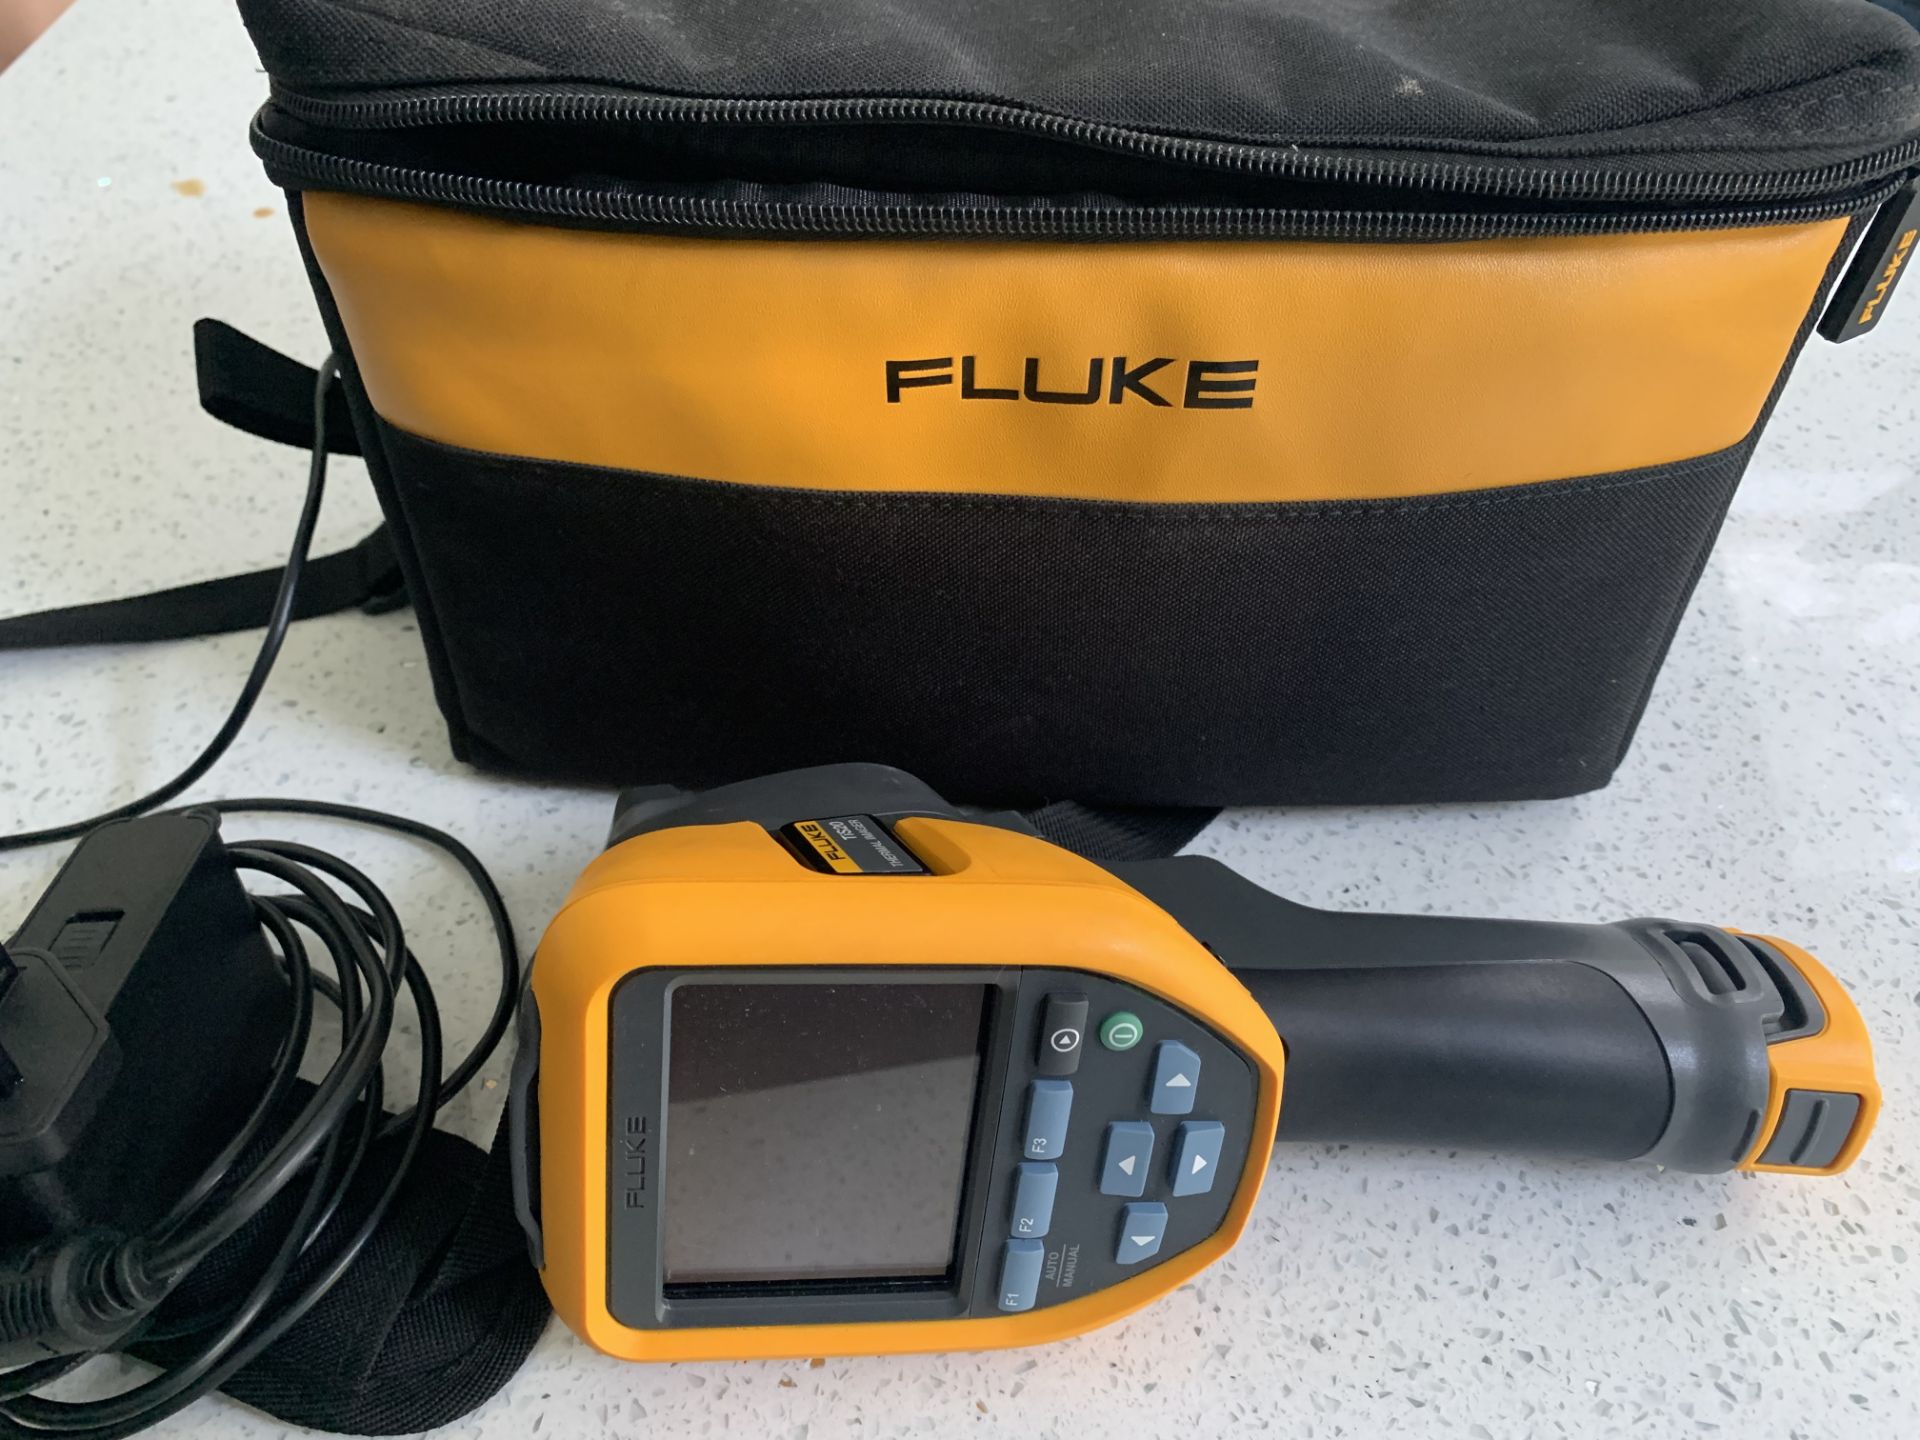 Fluke Thermal Imaging Camera Model TiS20